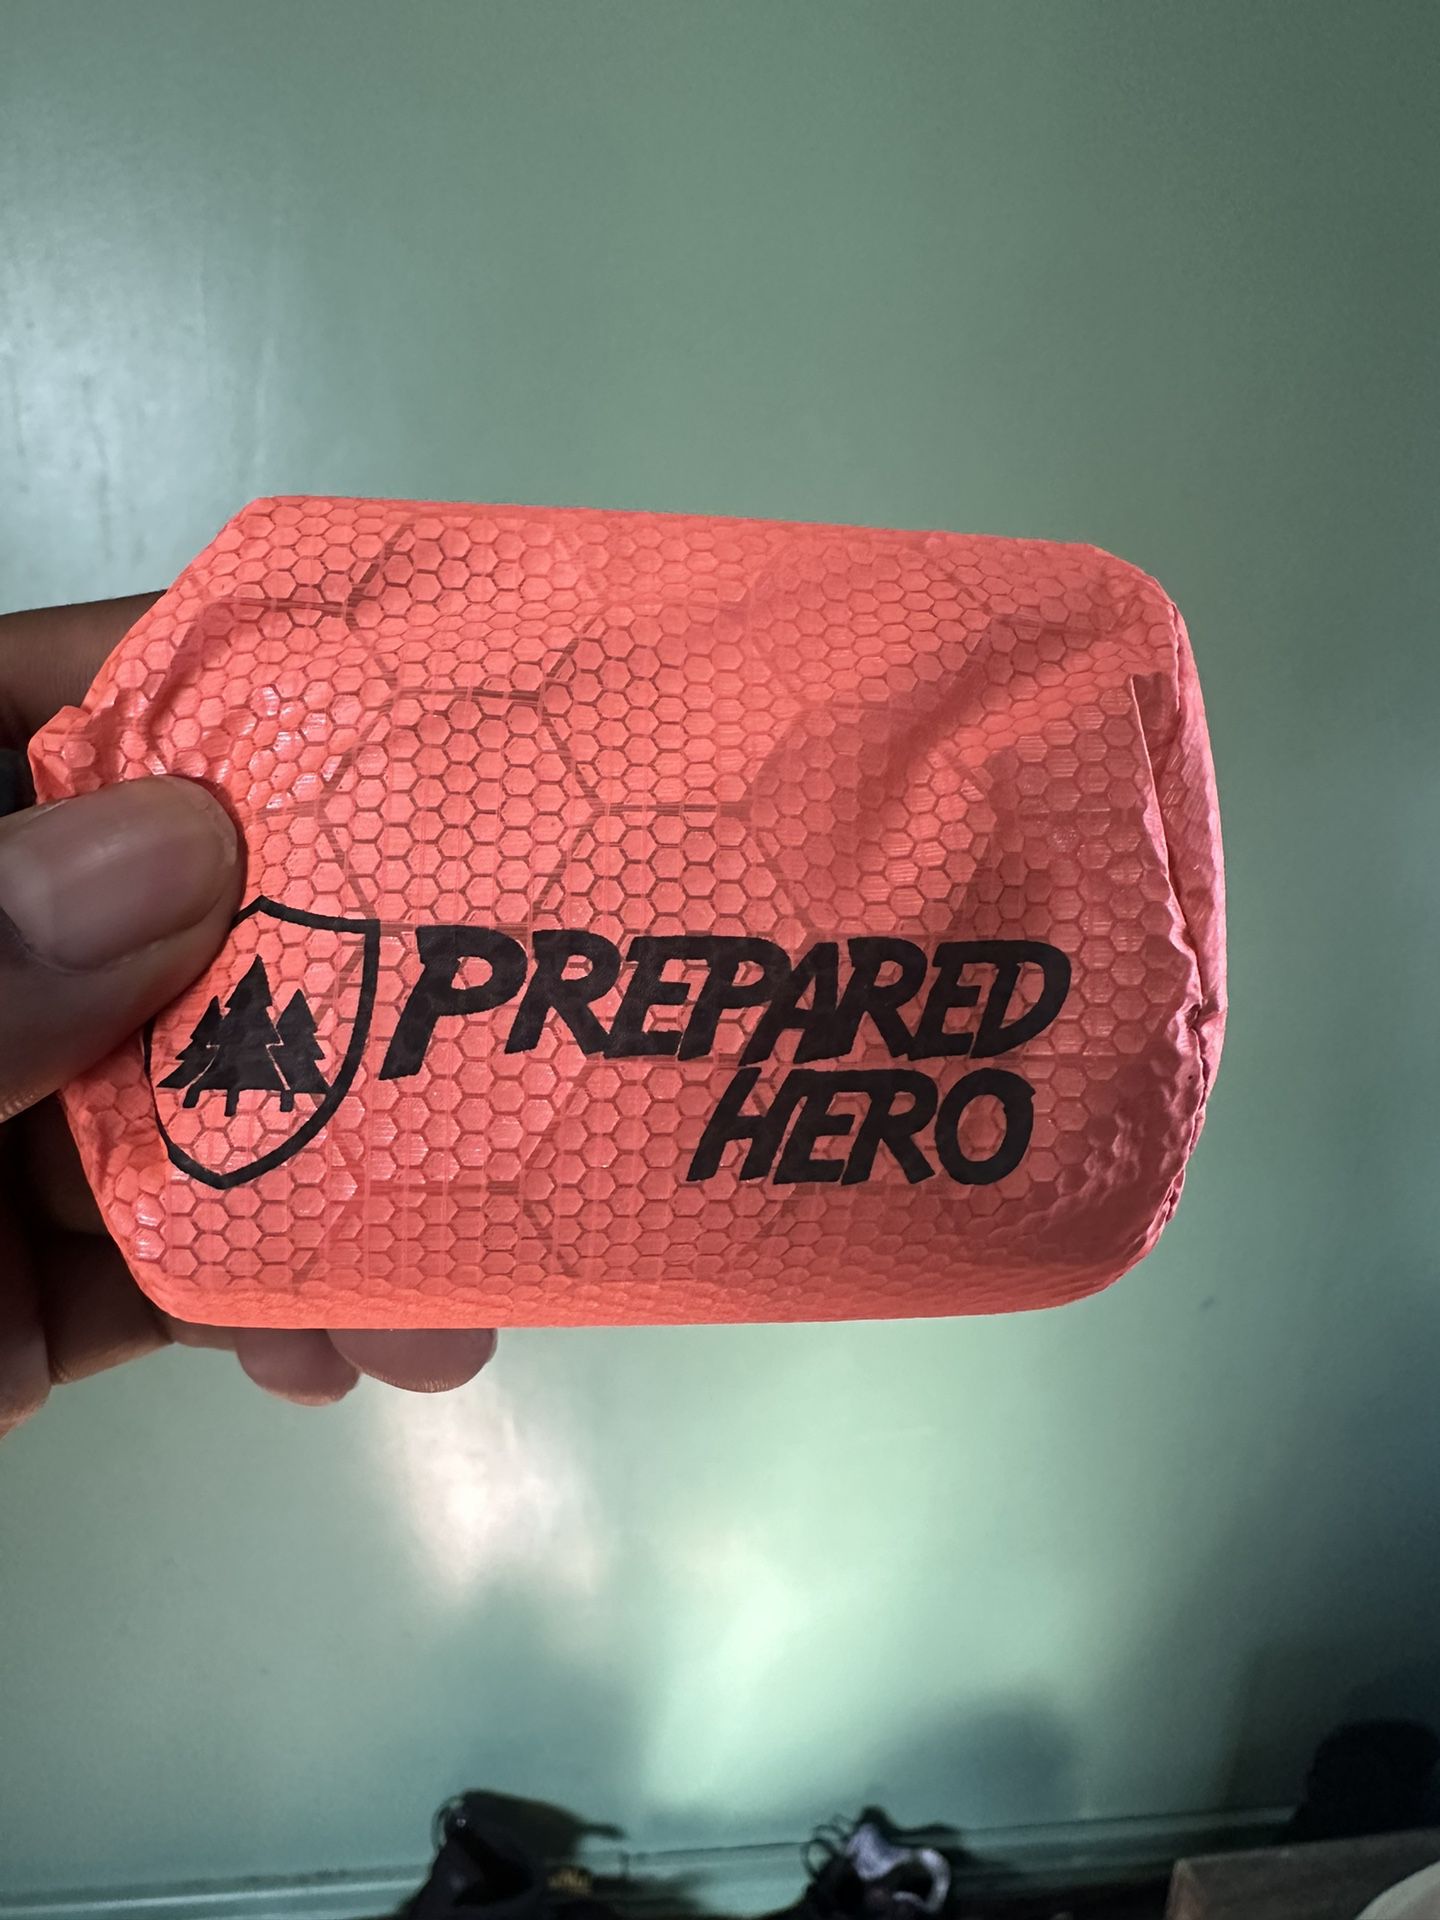 Prepared Hero Portable Sleeping Bag